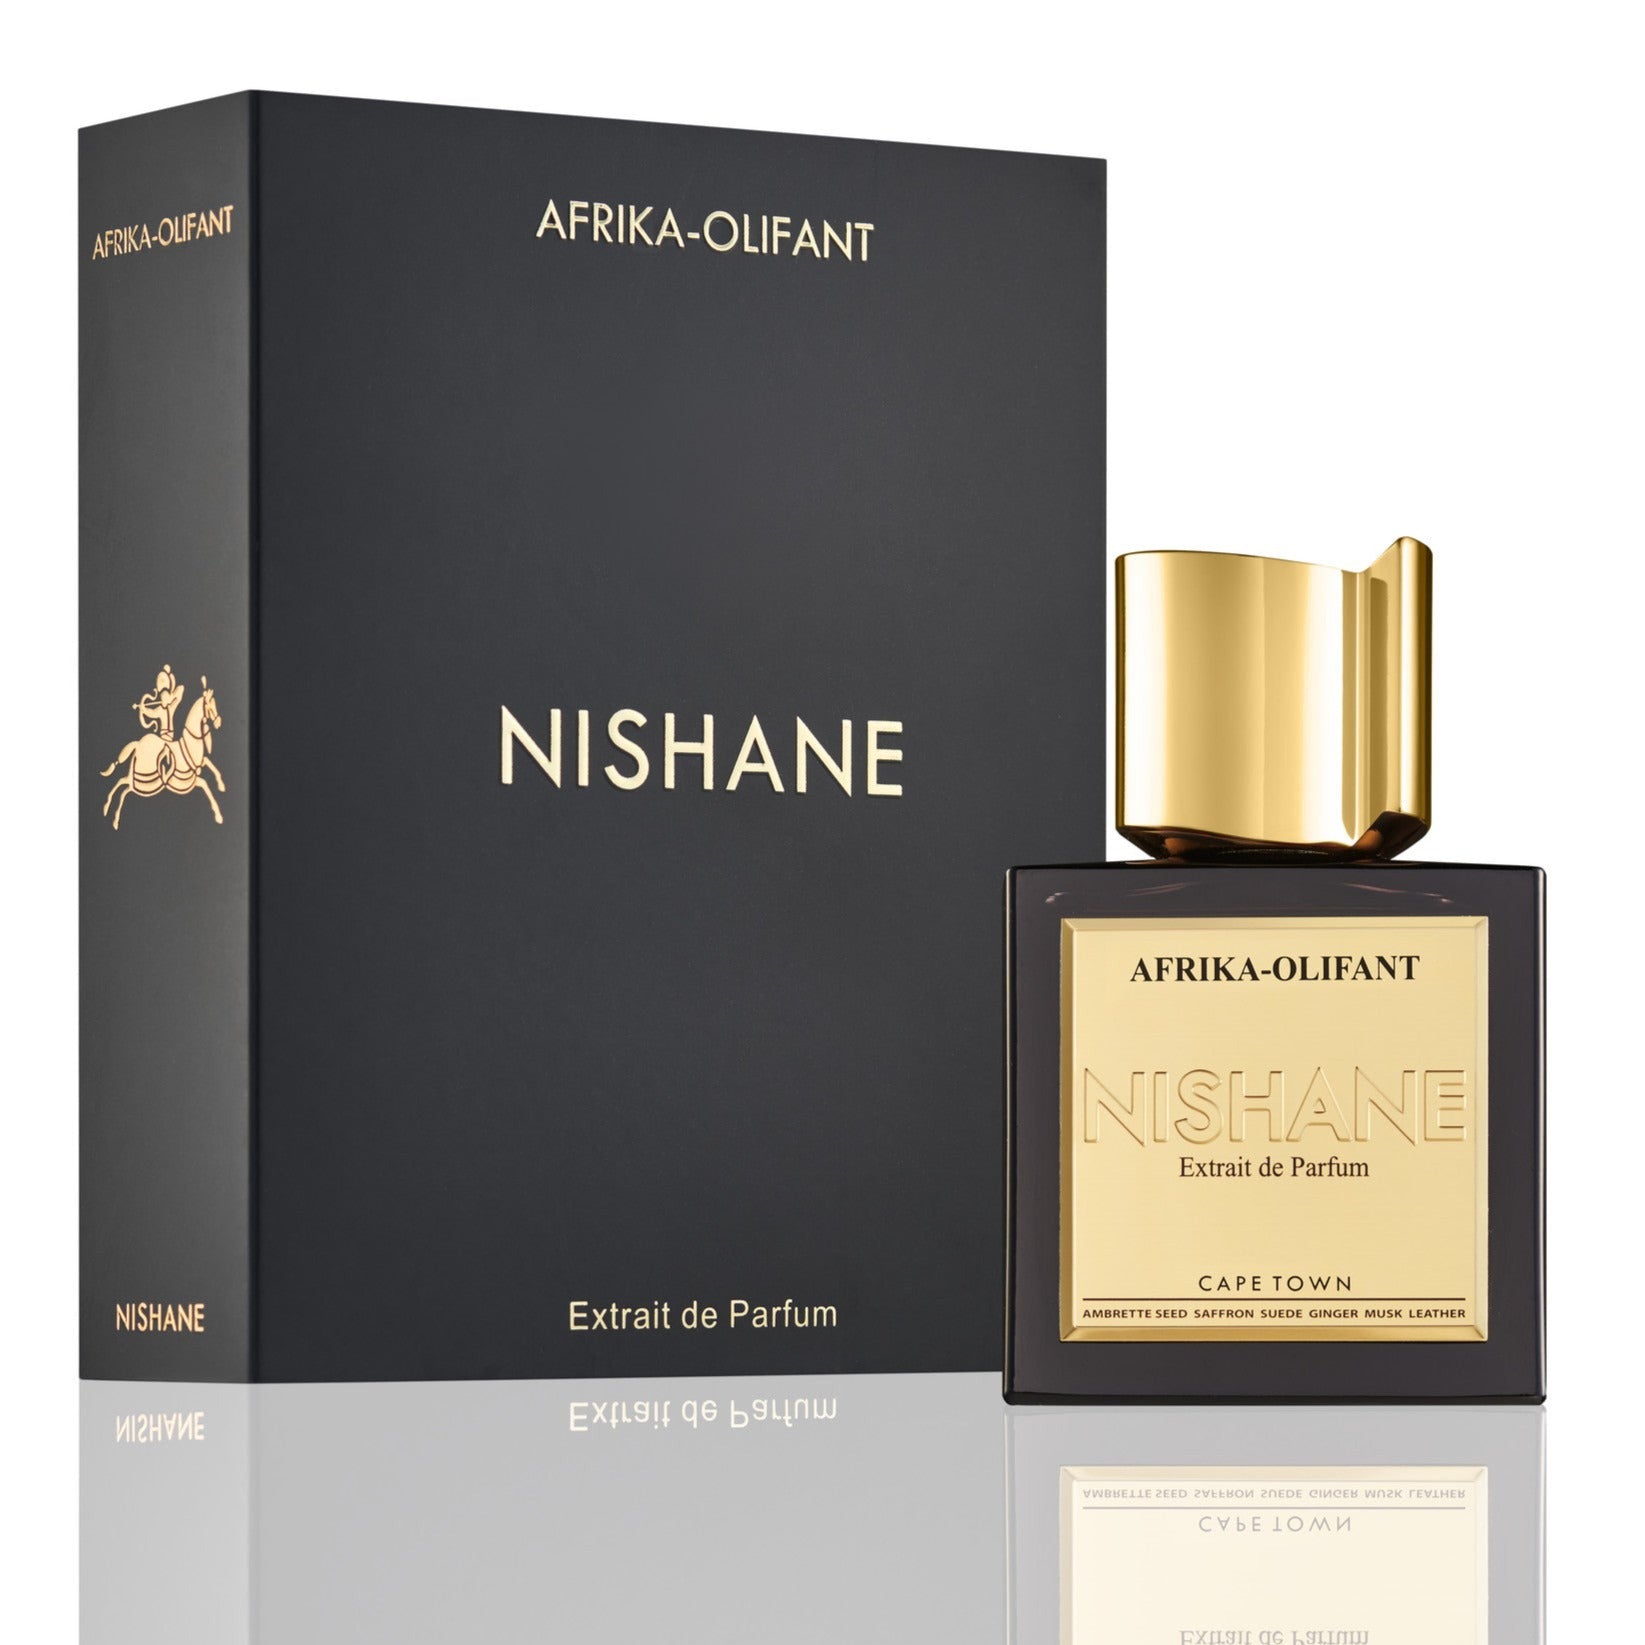 Nishane Afrika Olifant - Extrait De Parfum